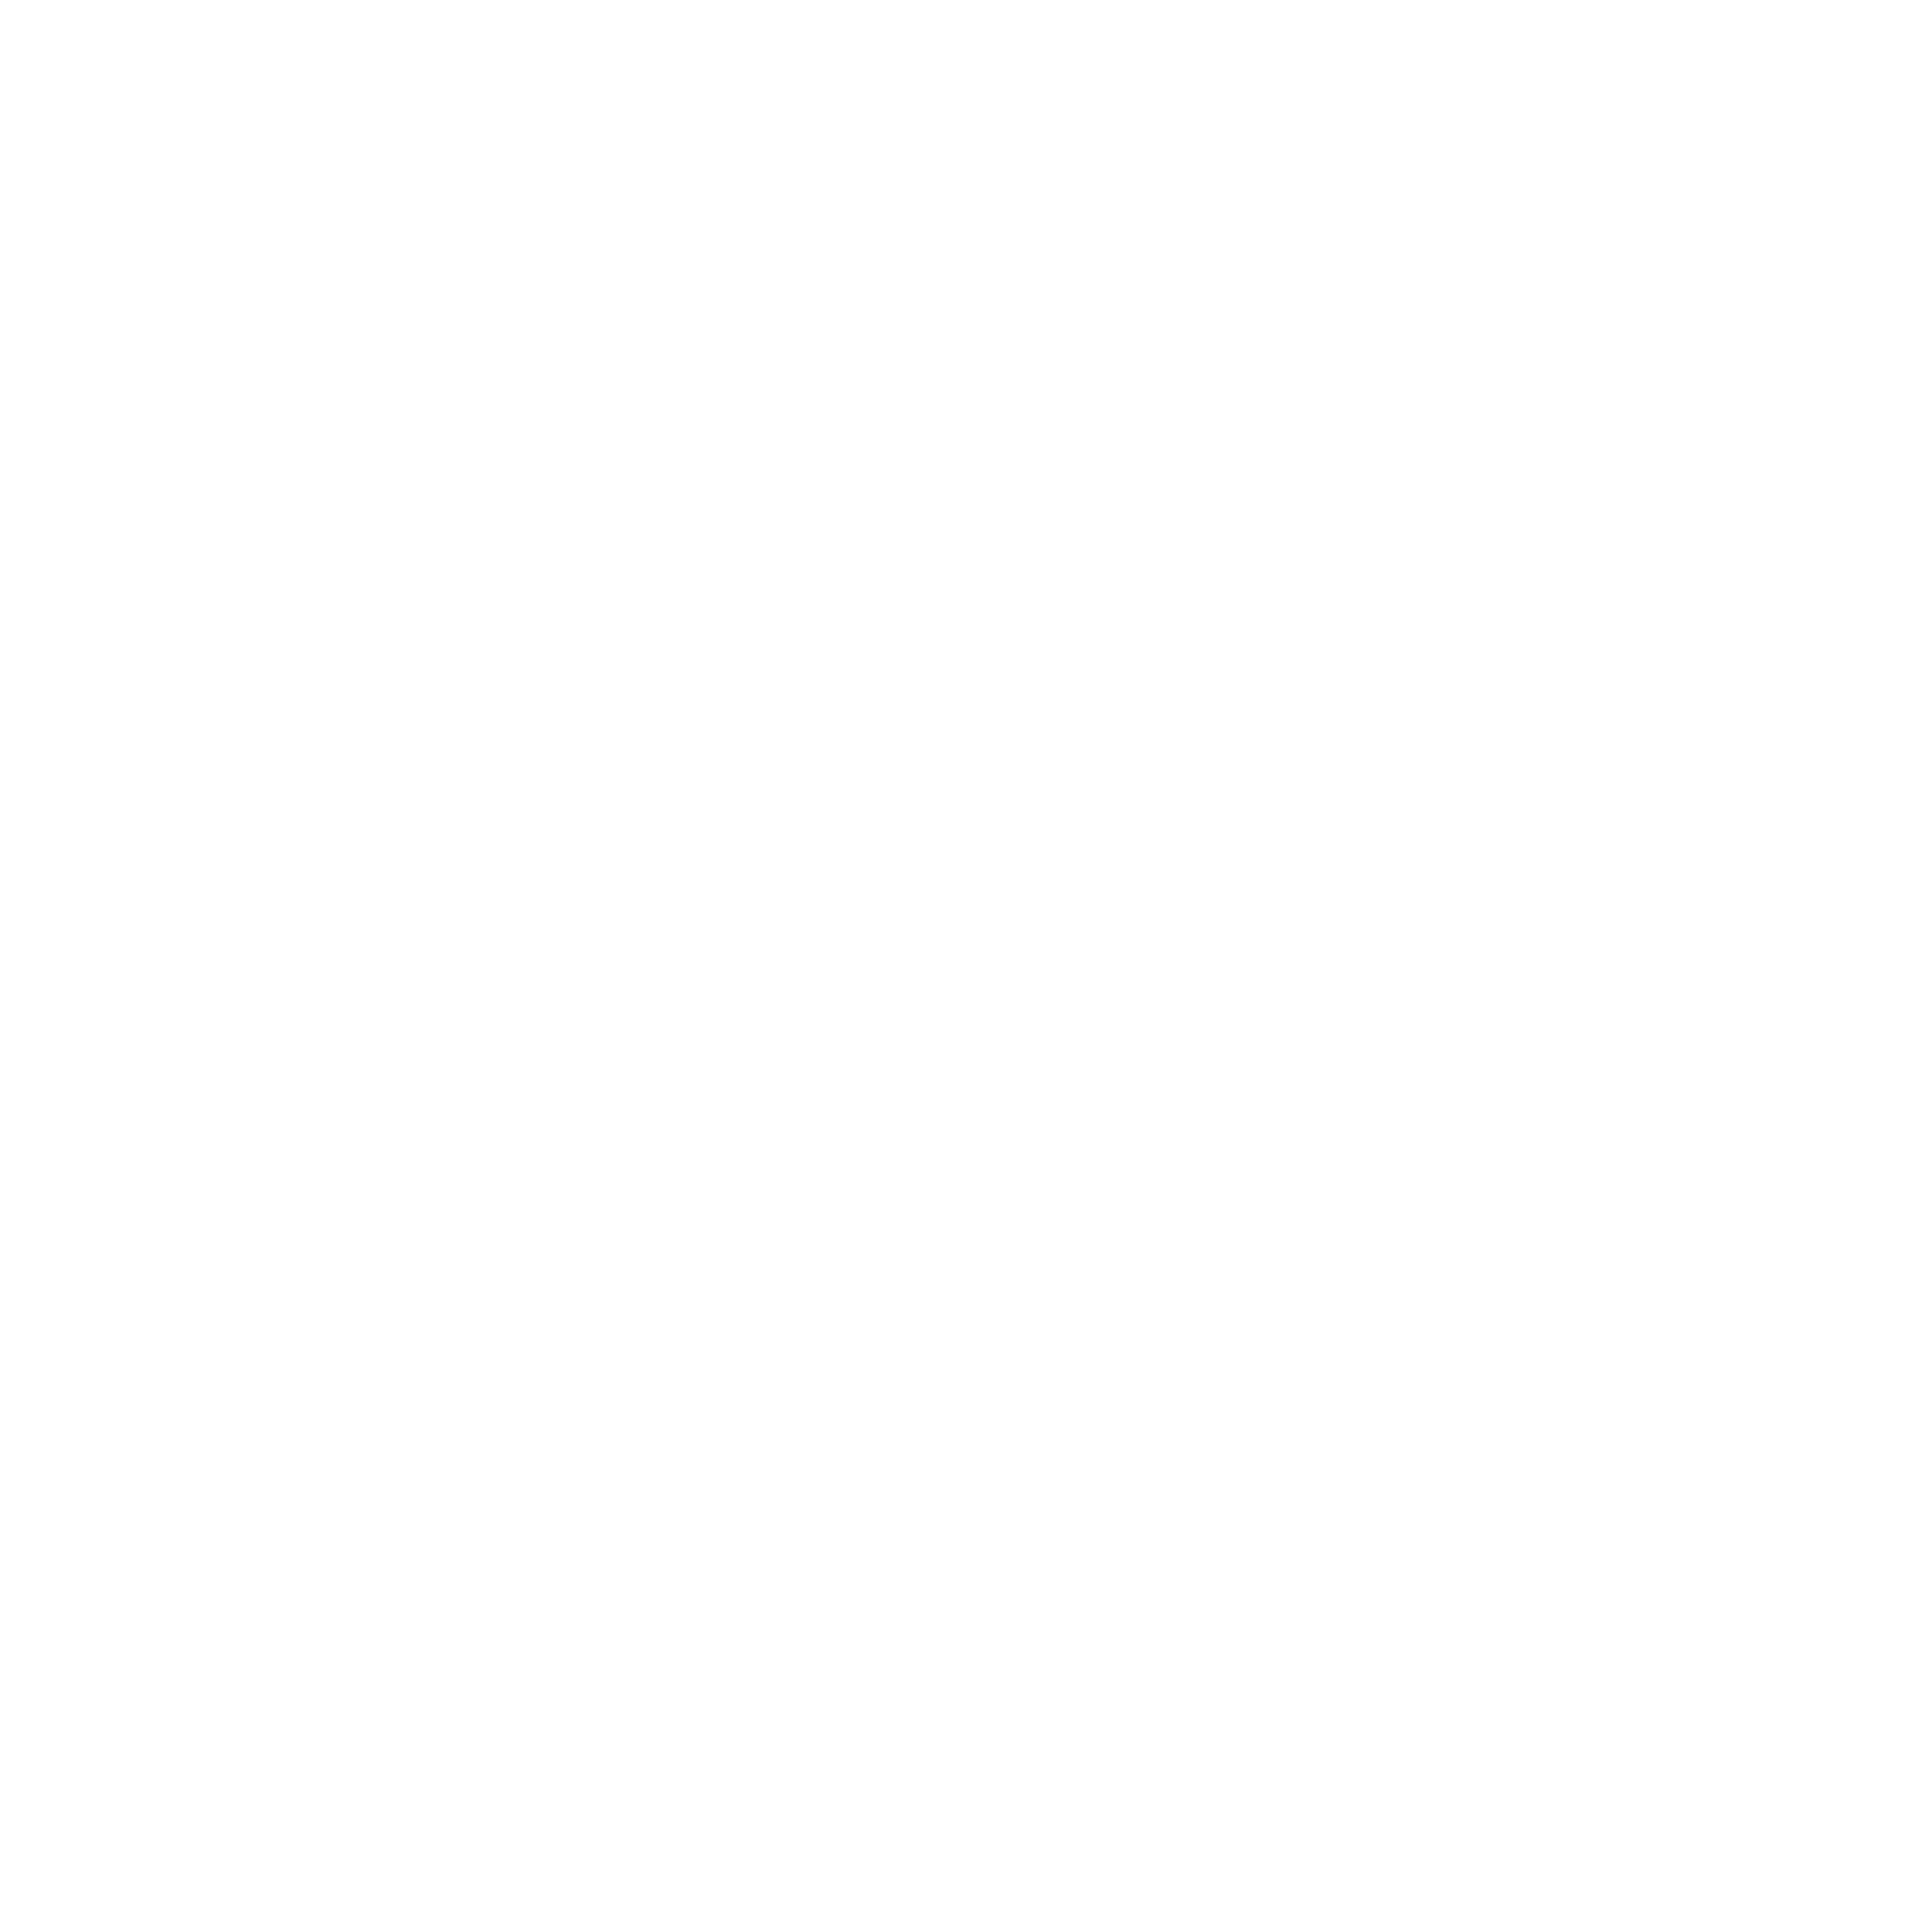 Aegcon 2022 logo